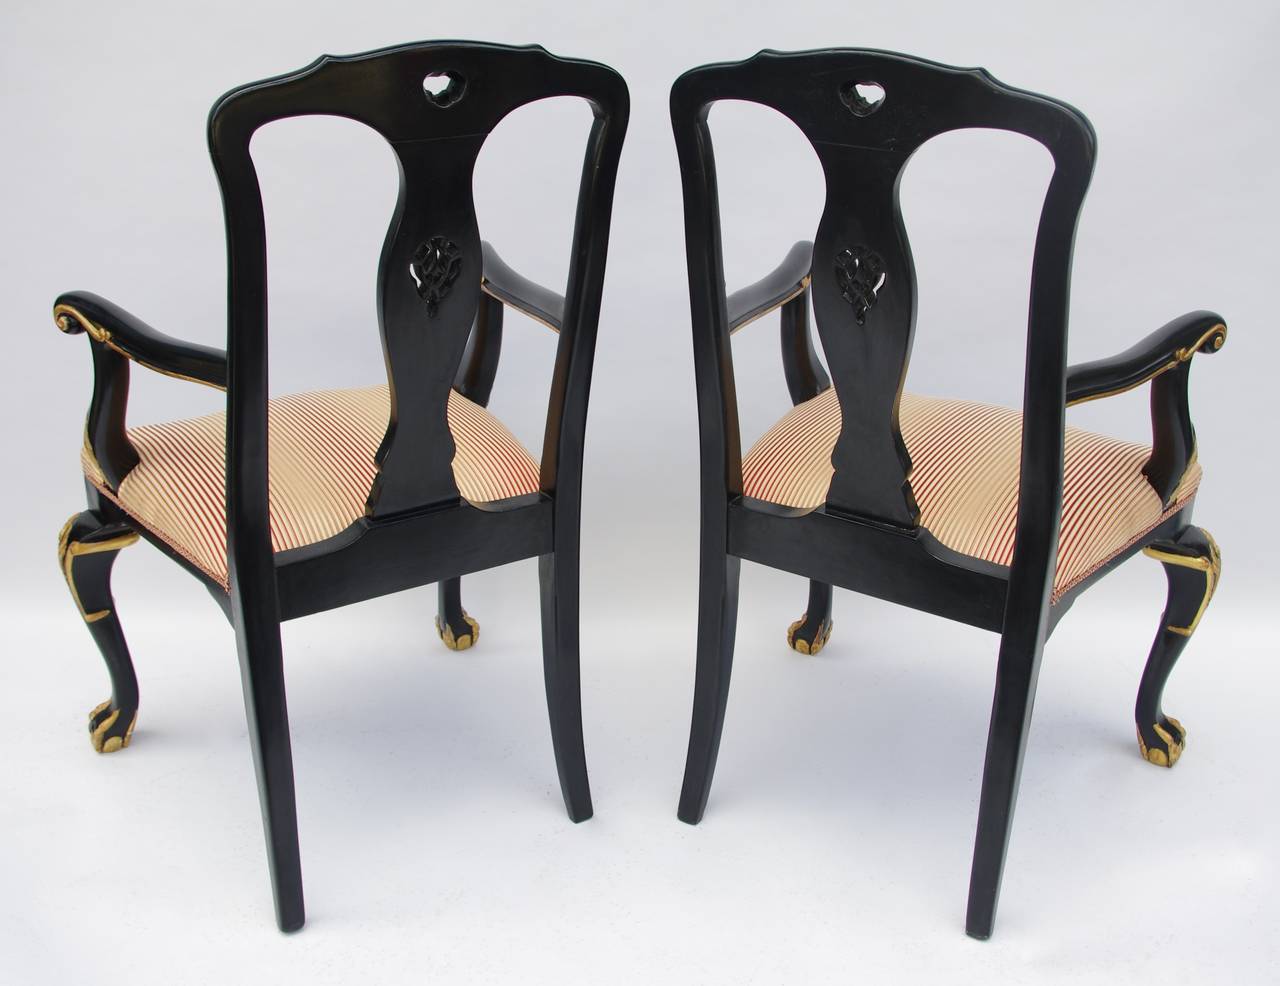 Zwei geschnitzte und schwarz lackierte Holzsessel im Chippendale-Stil, die auf zwei hinteren Säbelbeinen und zwei vorderen Klauen- und Kugelbeinen stehen, charakteristisch für den Chippendale-Stil. Rechteckige und durchbrochene Rückenlehne mit